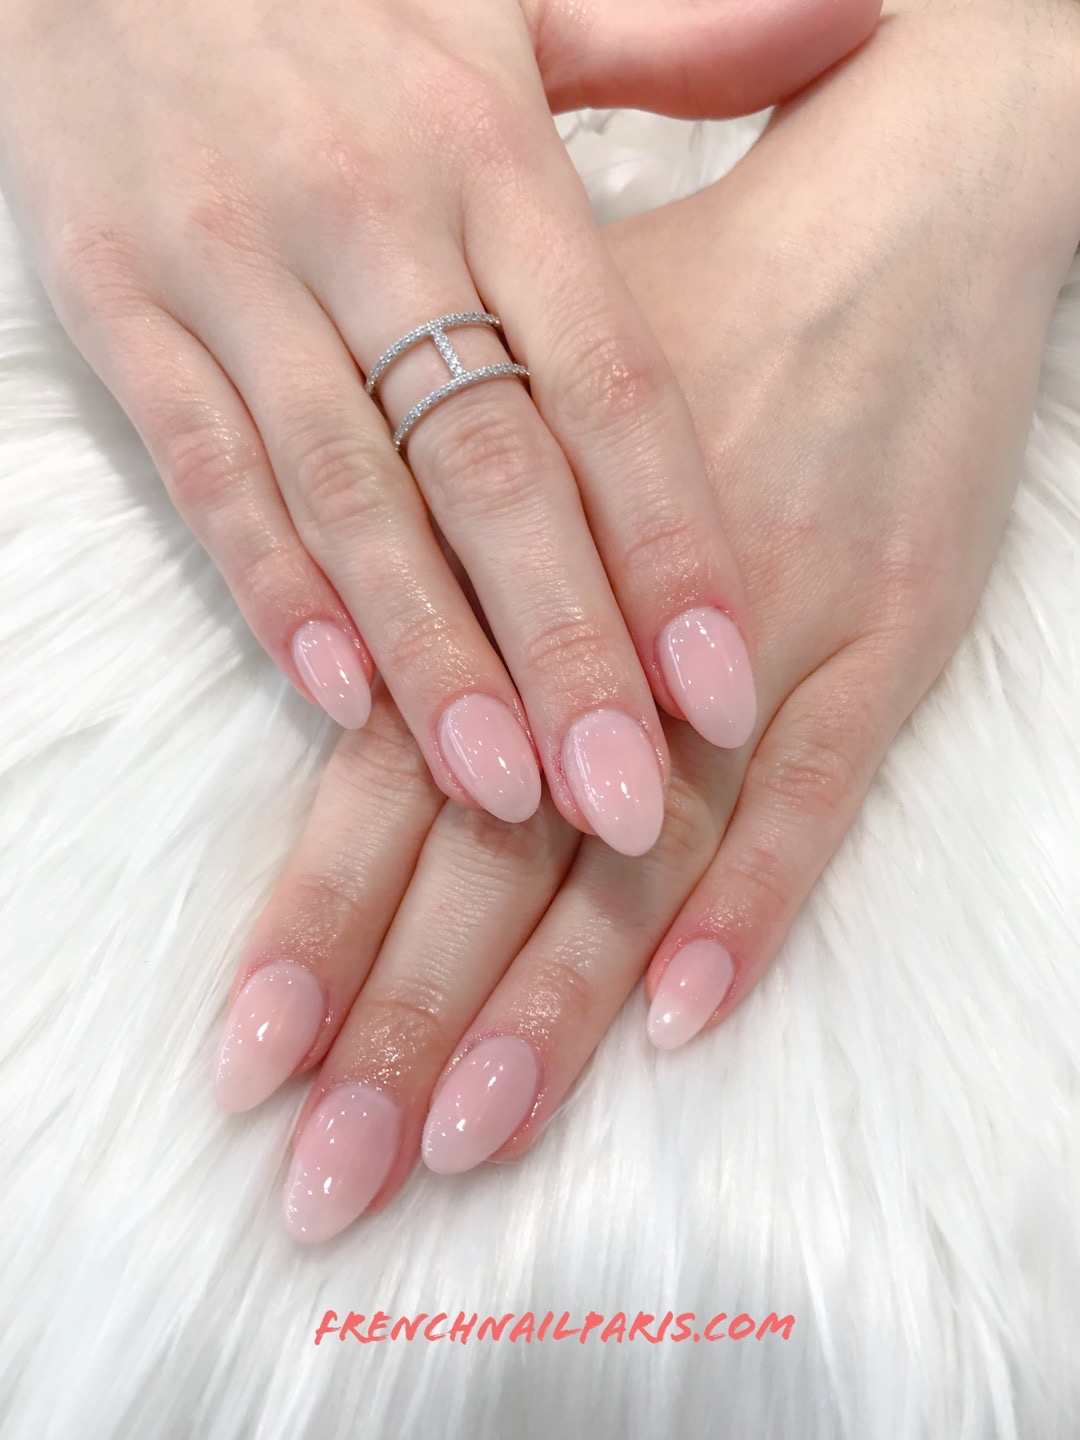 Vous souhaitez des ongles glamour, pourquoi ne pas essayer la pose en résine assortie d'un vernis semi permanent pour un effet naturel ?